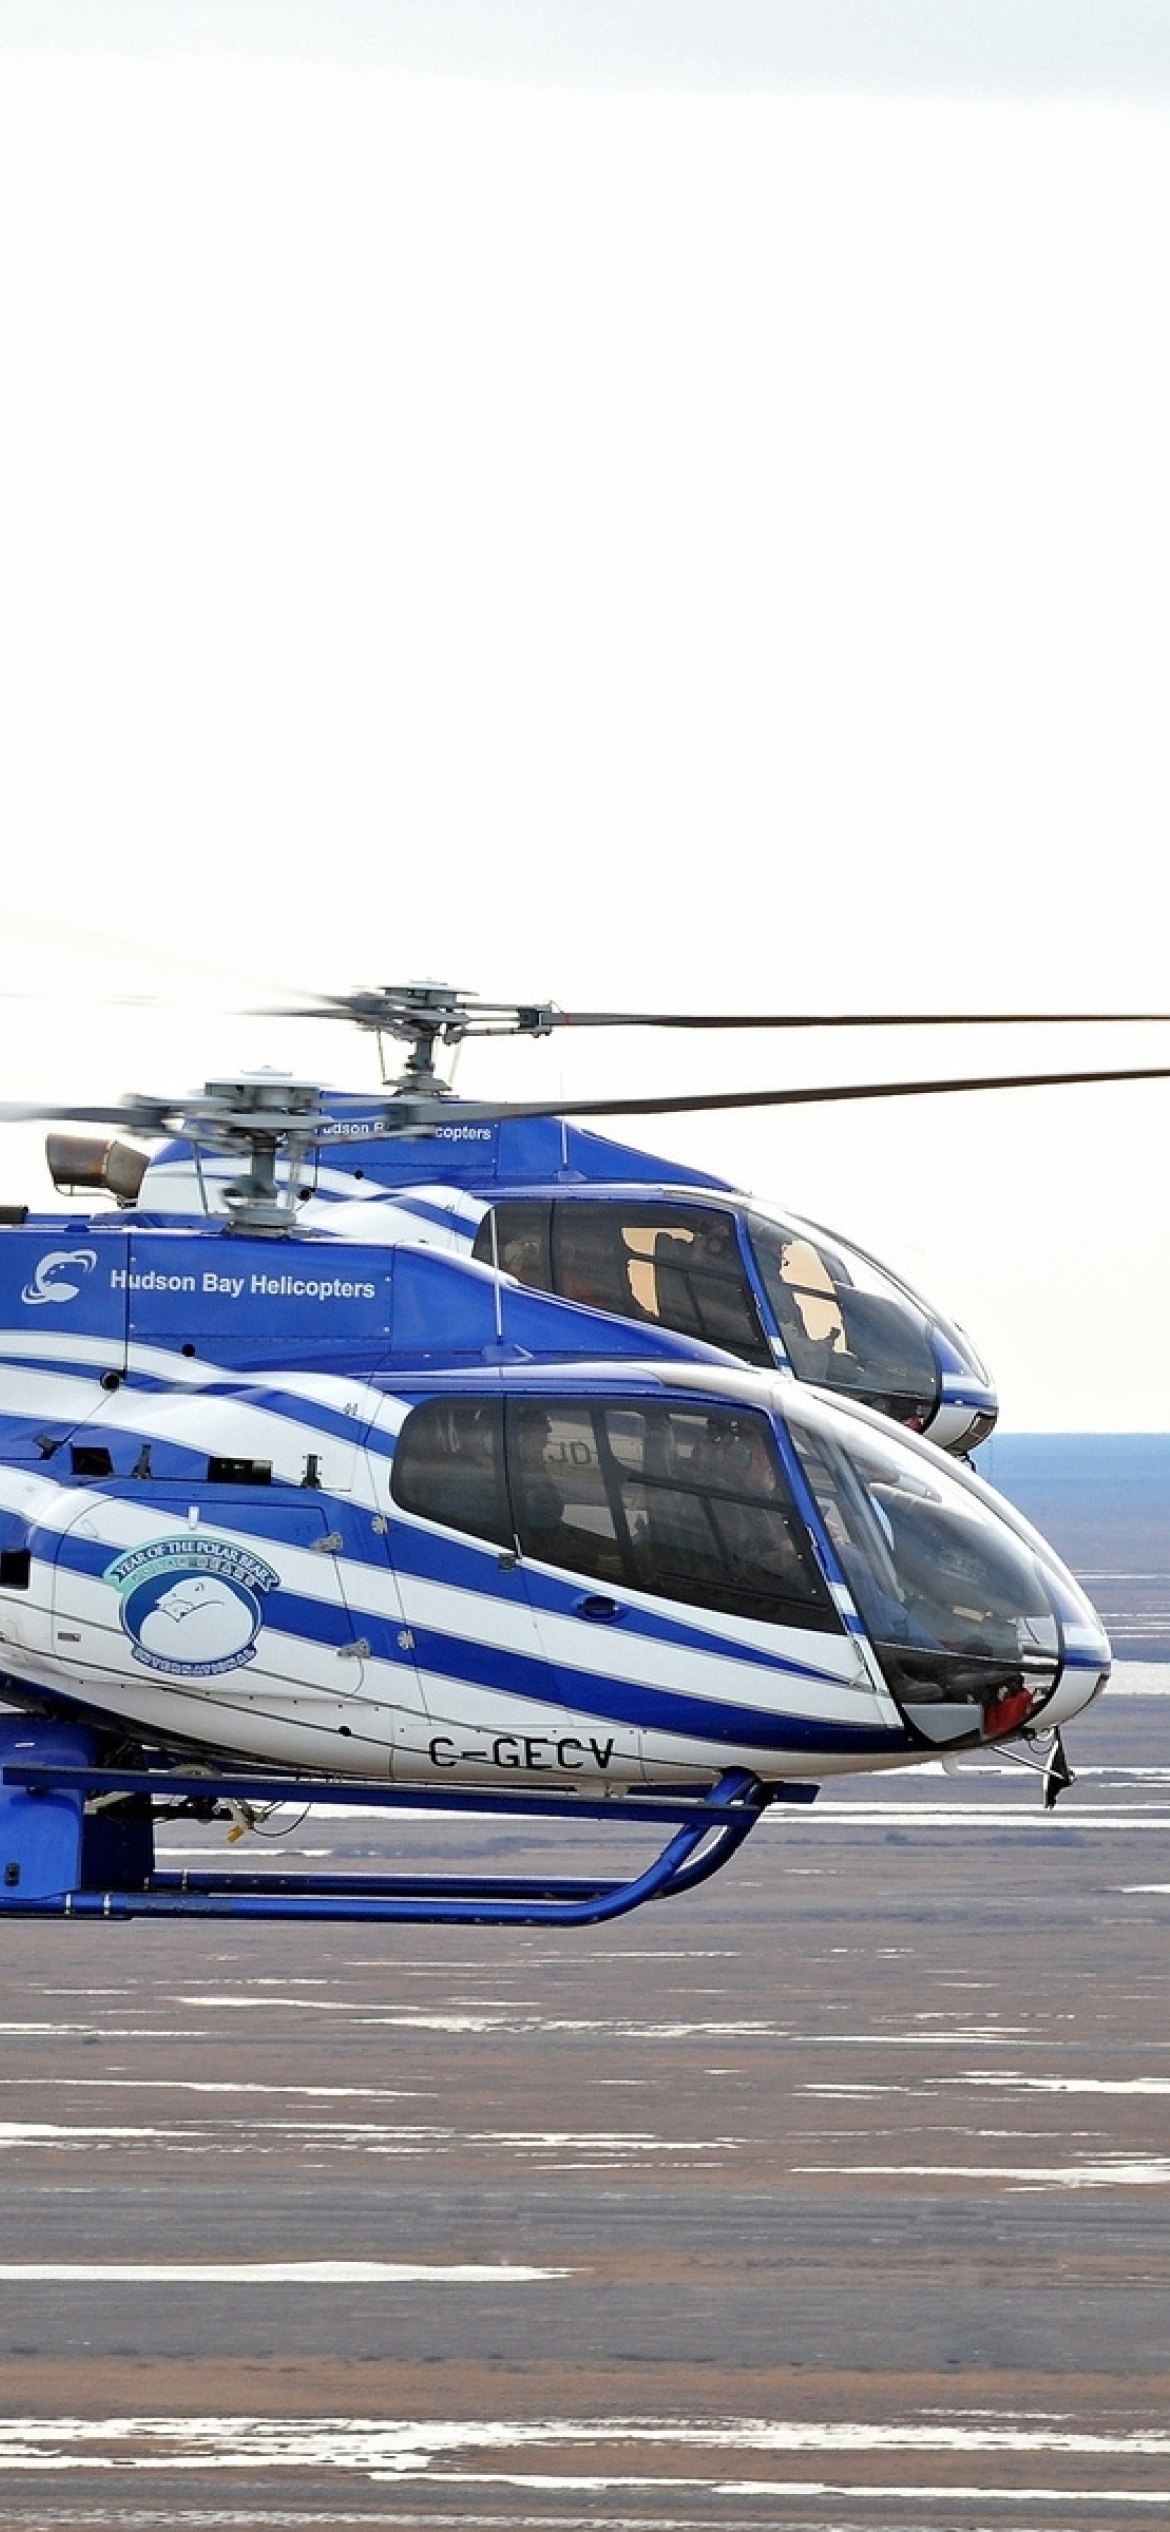 Обои Hudson Bay Helicopters 1170x2532